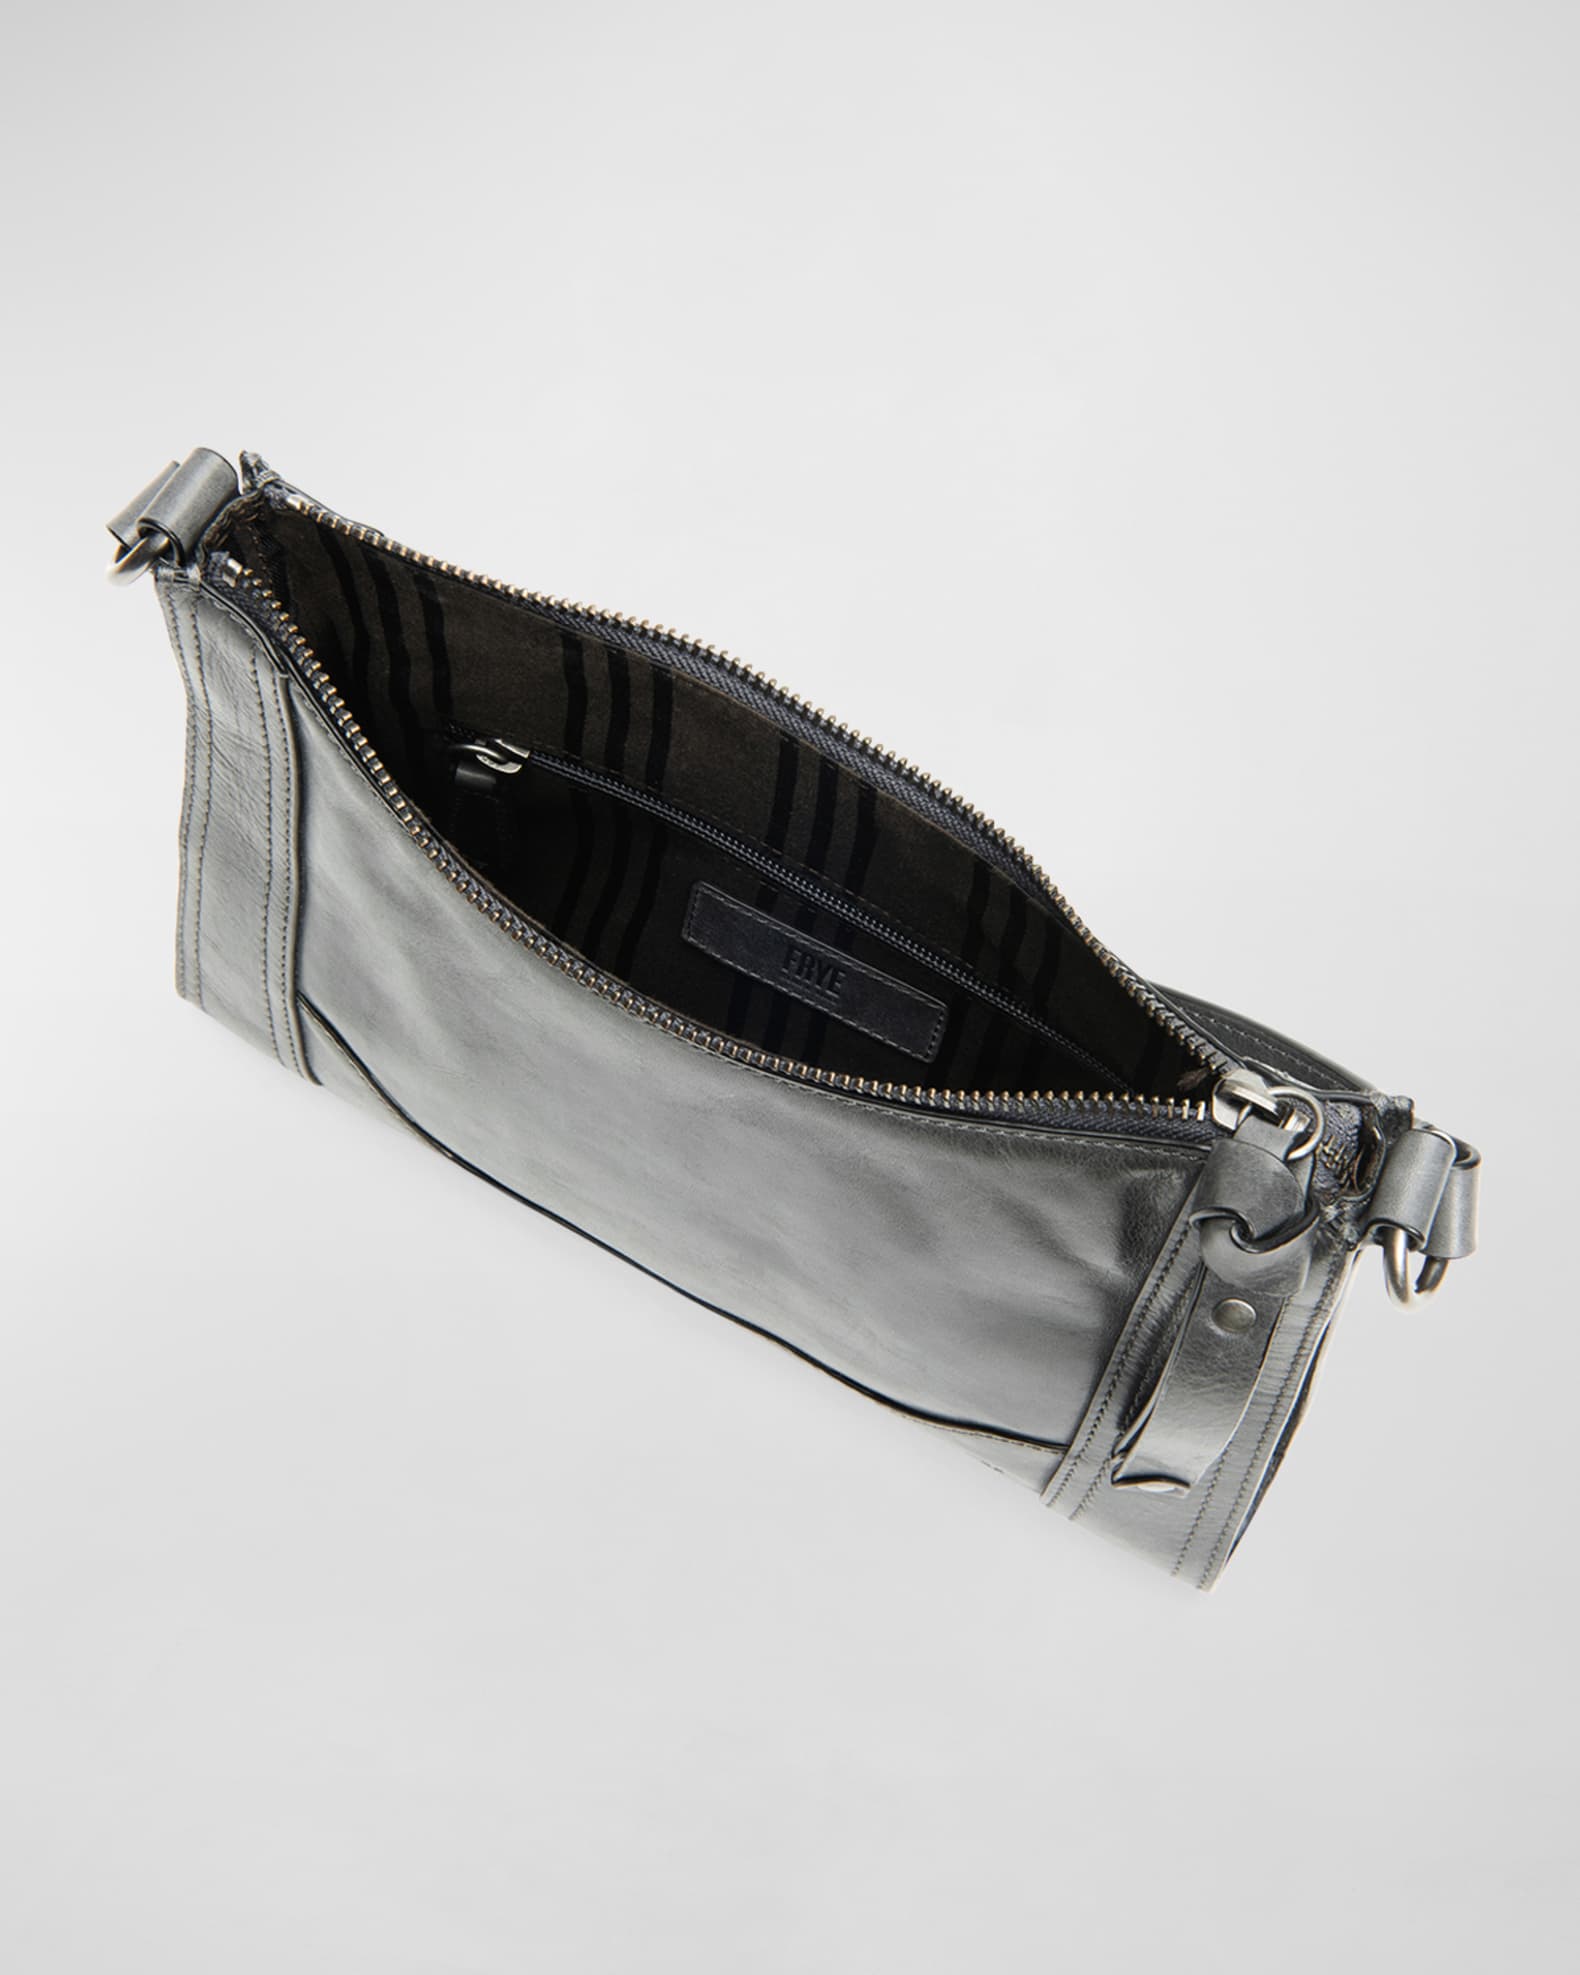 Frye Melissa Antique Leather Zip Crossbody Bag | Neiman Marcus